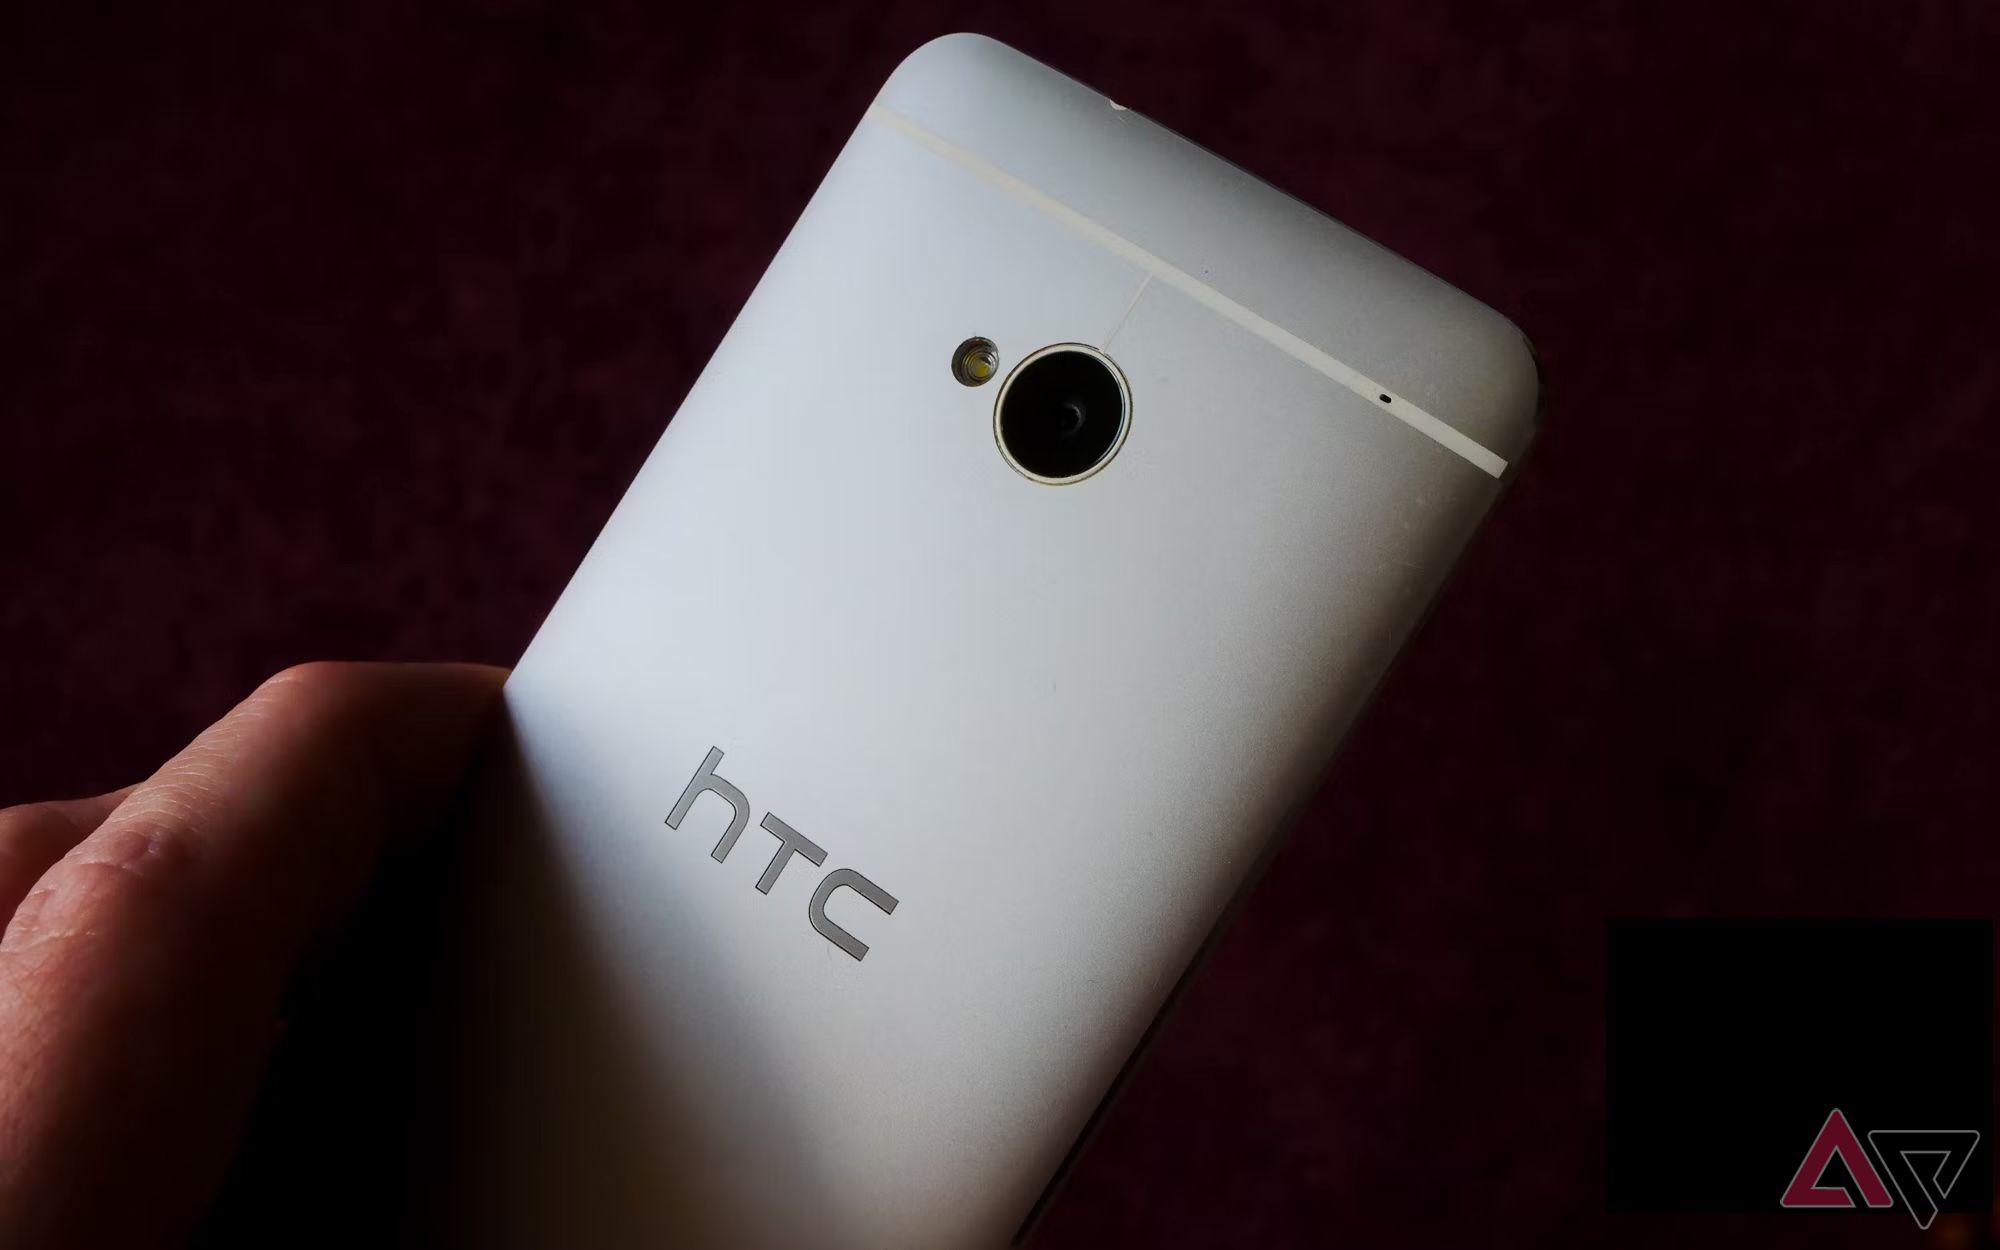 Uma mão segurando um HTC One M7 contra um fundo preto escuro.